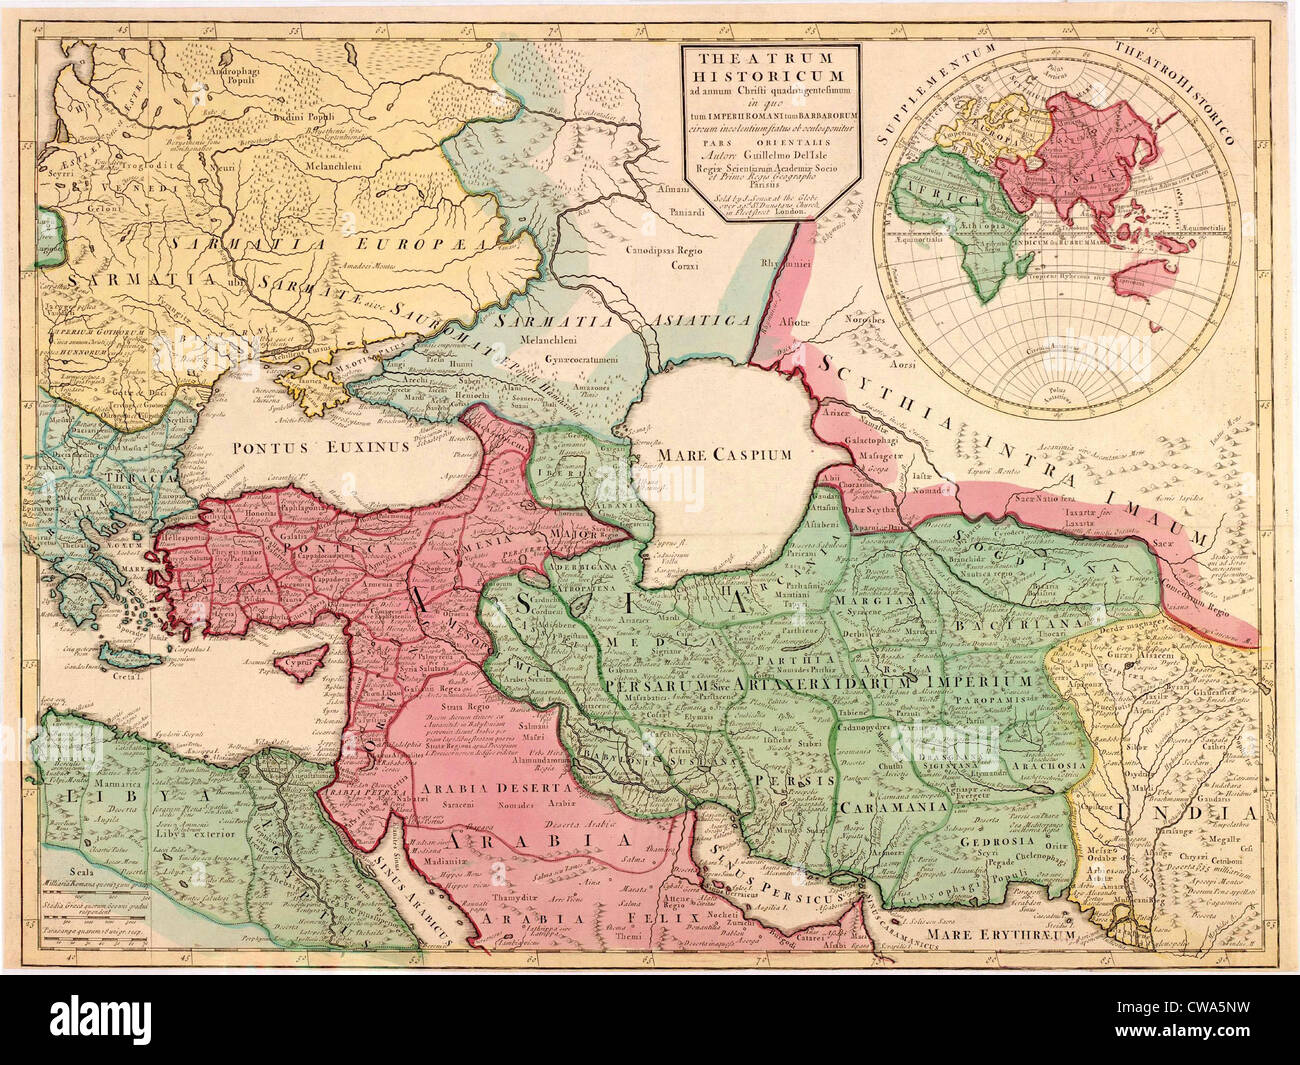 1712 Francese Mappa di Asia sud-ovest e sud-est Europa ricreando la geografia del tardo impero romano del 400 D.C. Usa mappa Foto Stock